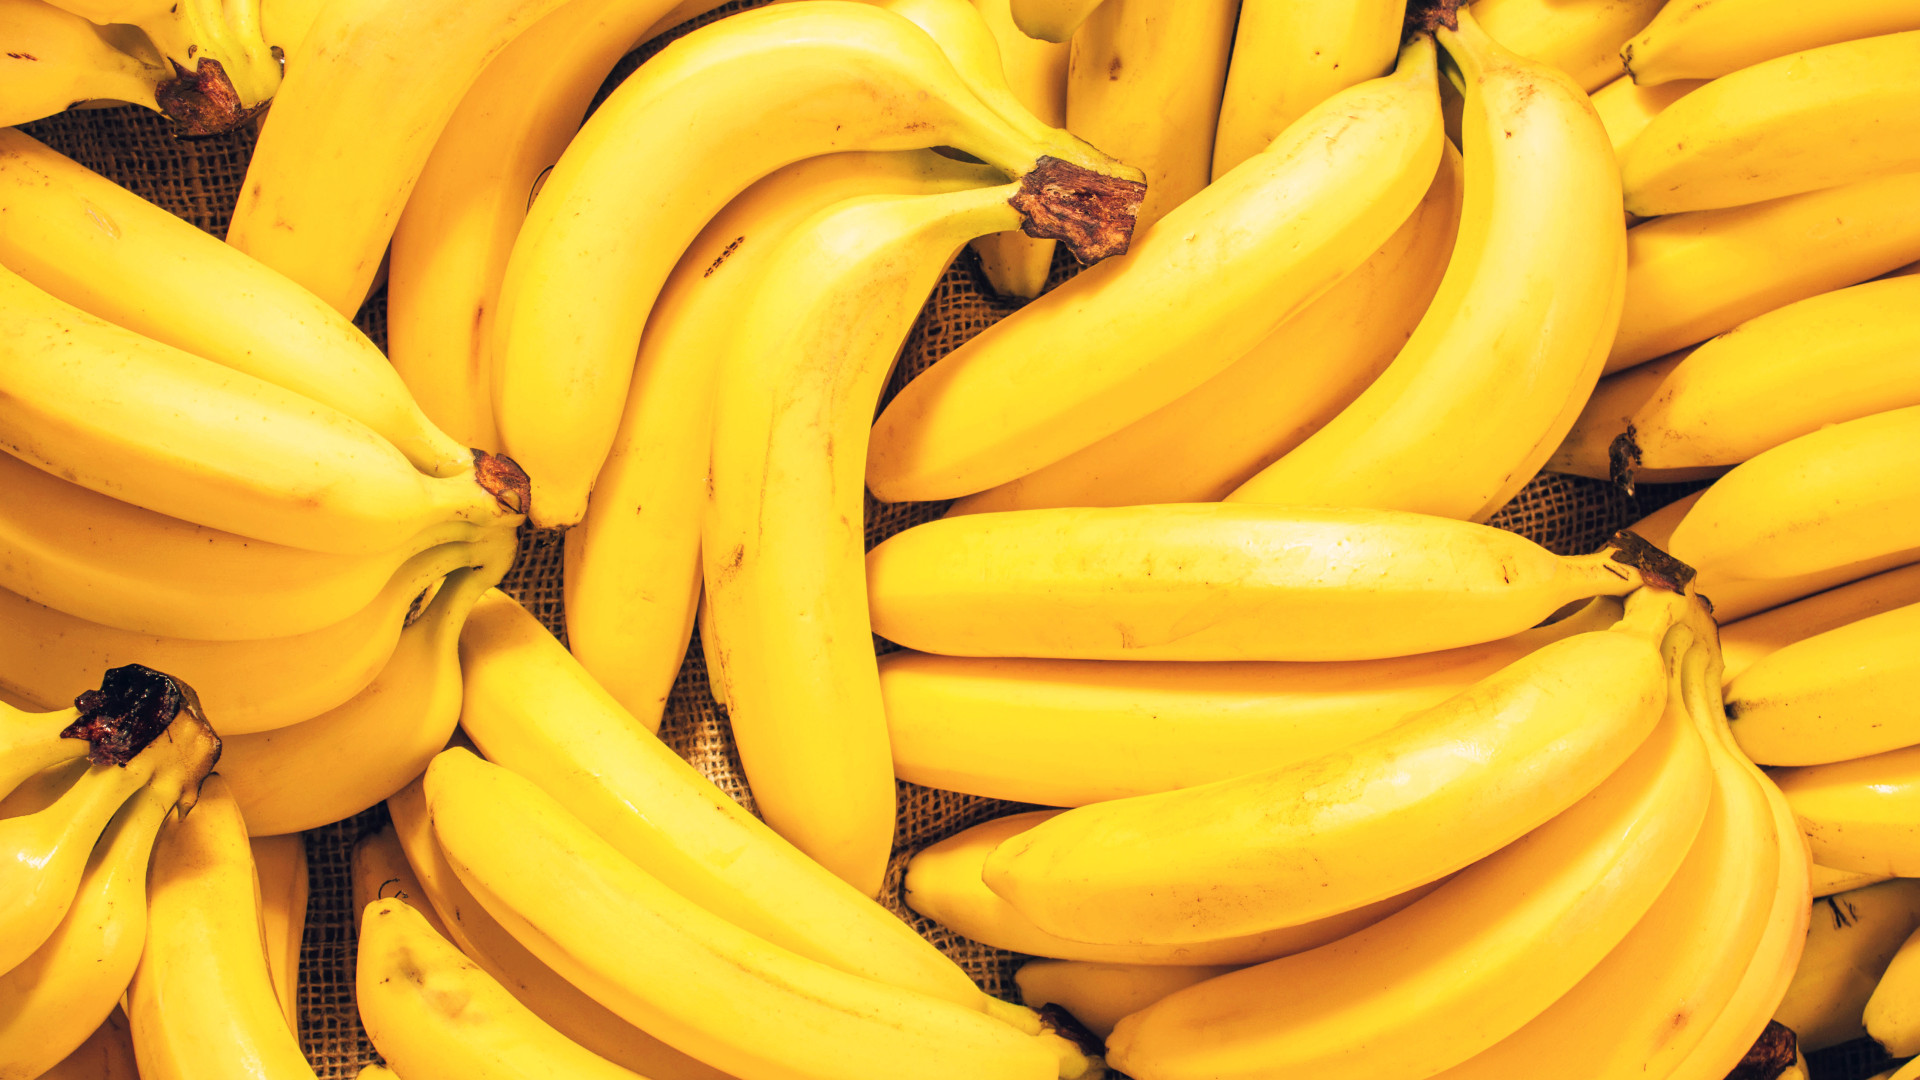  Ονειρεύεστε ώριμη μπανάνα: Ποια είναι τα νοήματα, ο συμβολισμός και η πνευματικότητα;